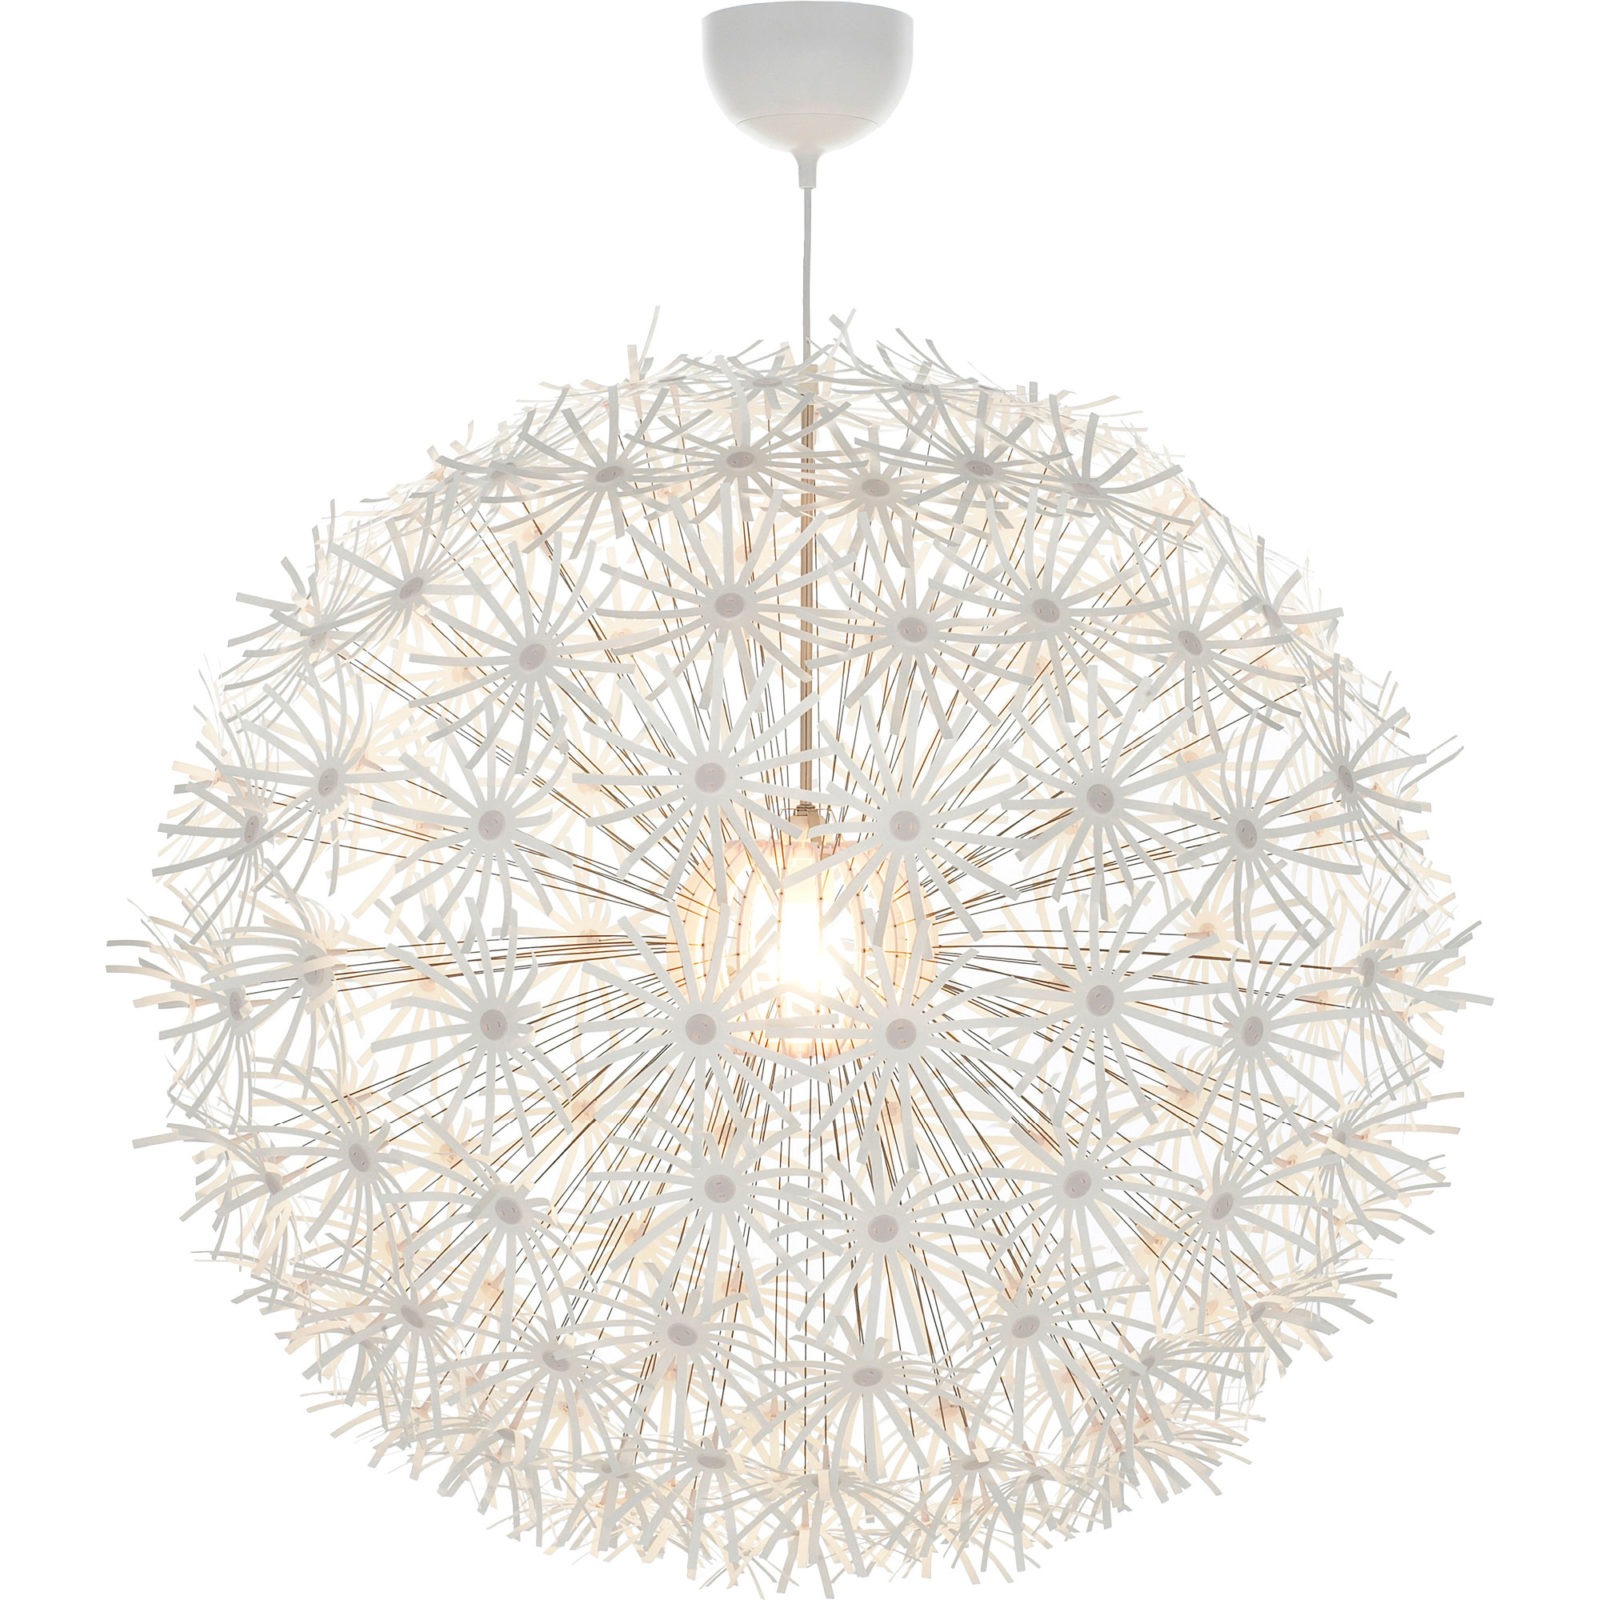 Lampa som ser ut som en sfärisk maskrosboll på väg att spridas av vinden, IKEA PS MASKROS.